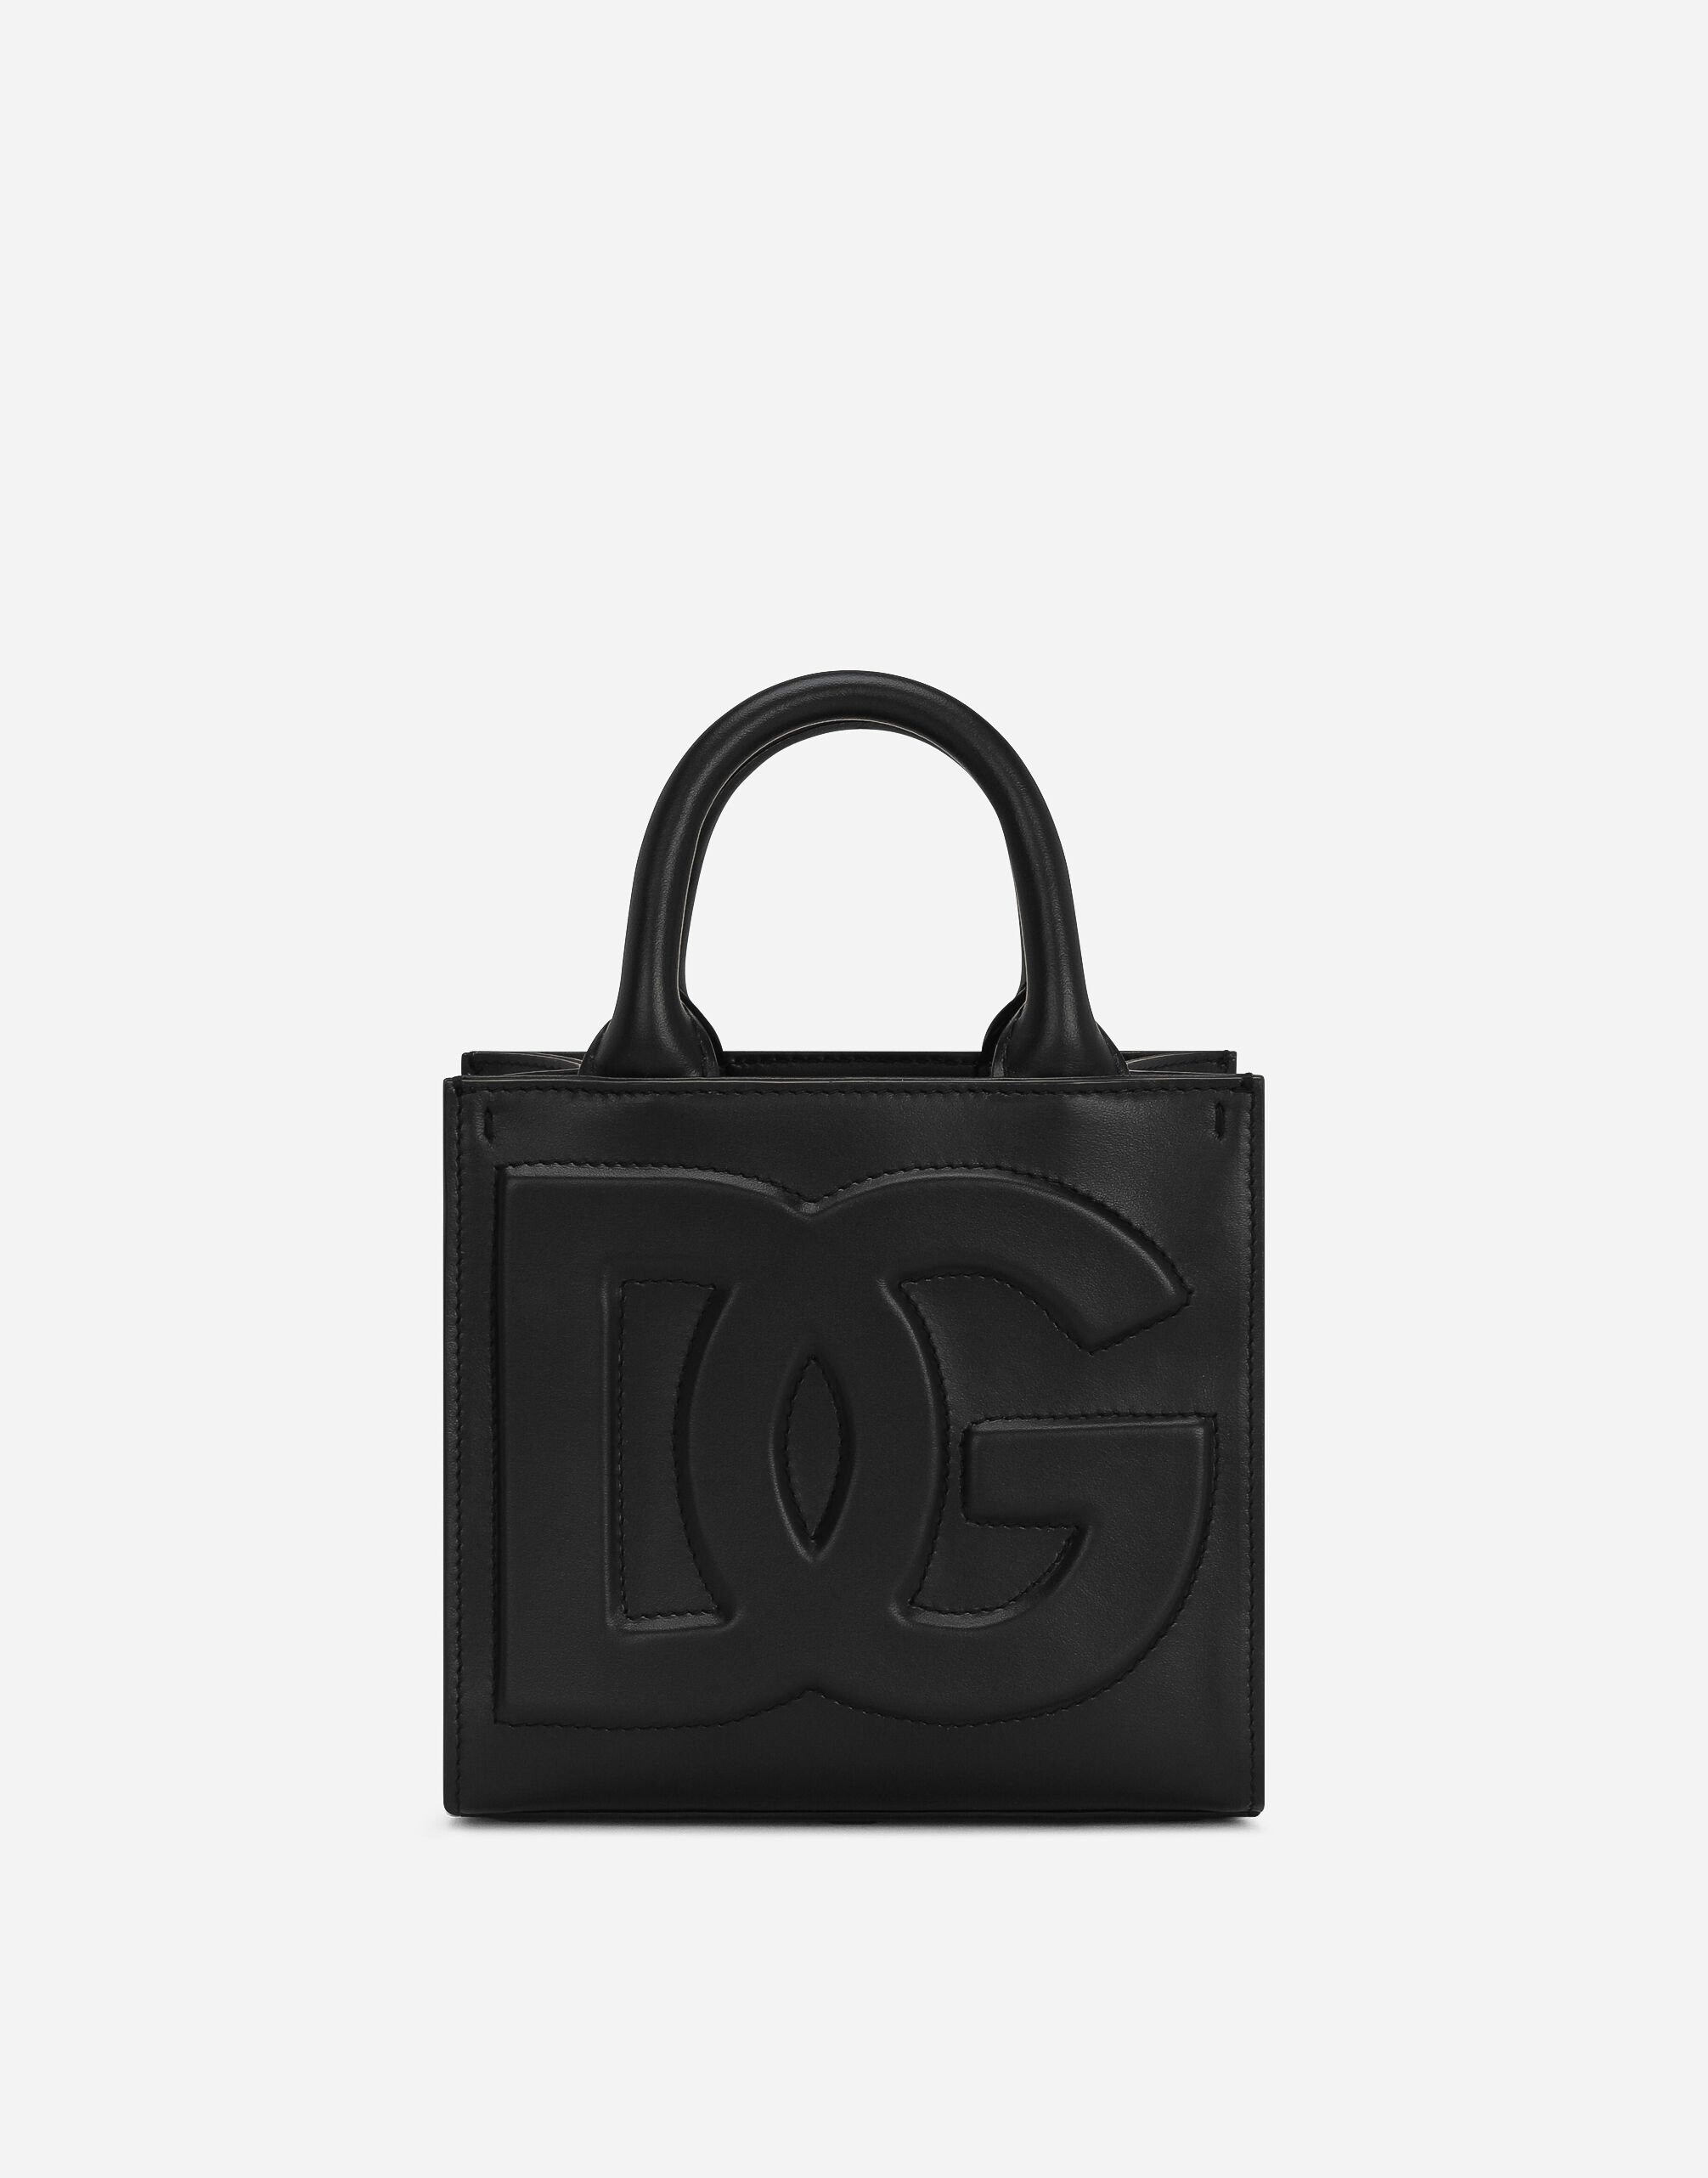 Dolce & Gabbana حقيبة تسوق صغيرة DG Daily متعدد الألوان BB7270AR355